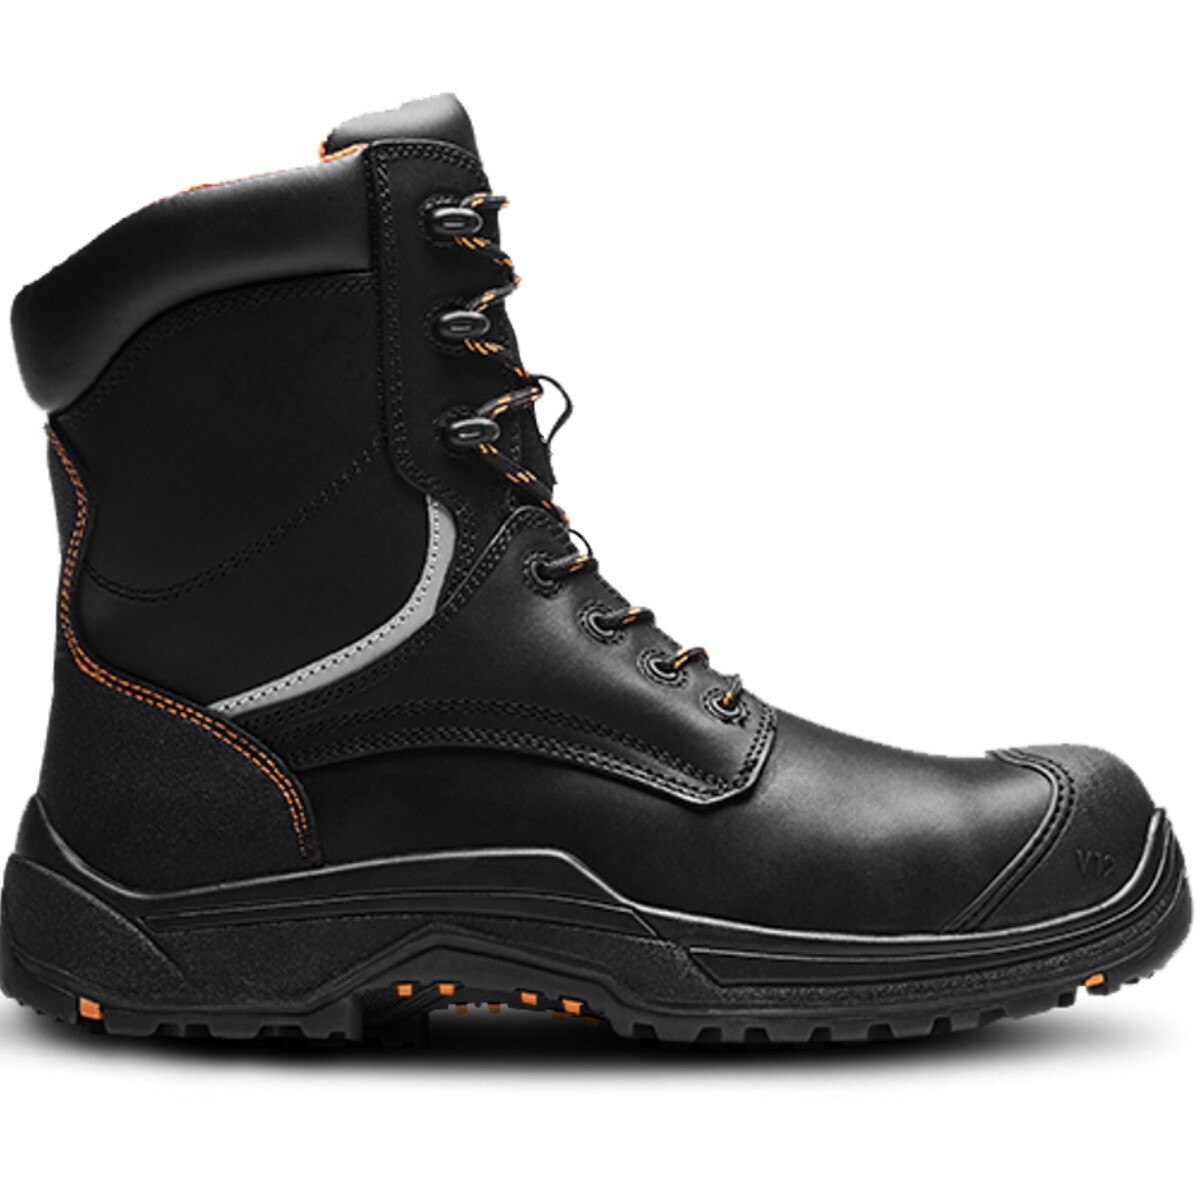 V12 Footwear VR620.01 Avenger IGS Black High Leg Safety Boot S3 HRO SRC ...